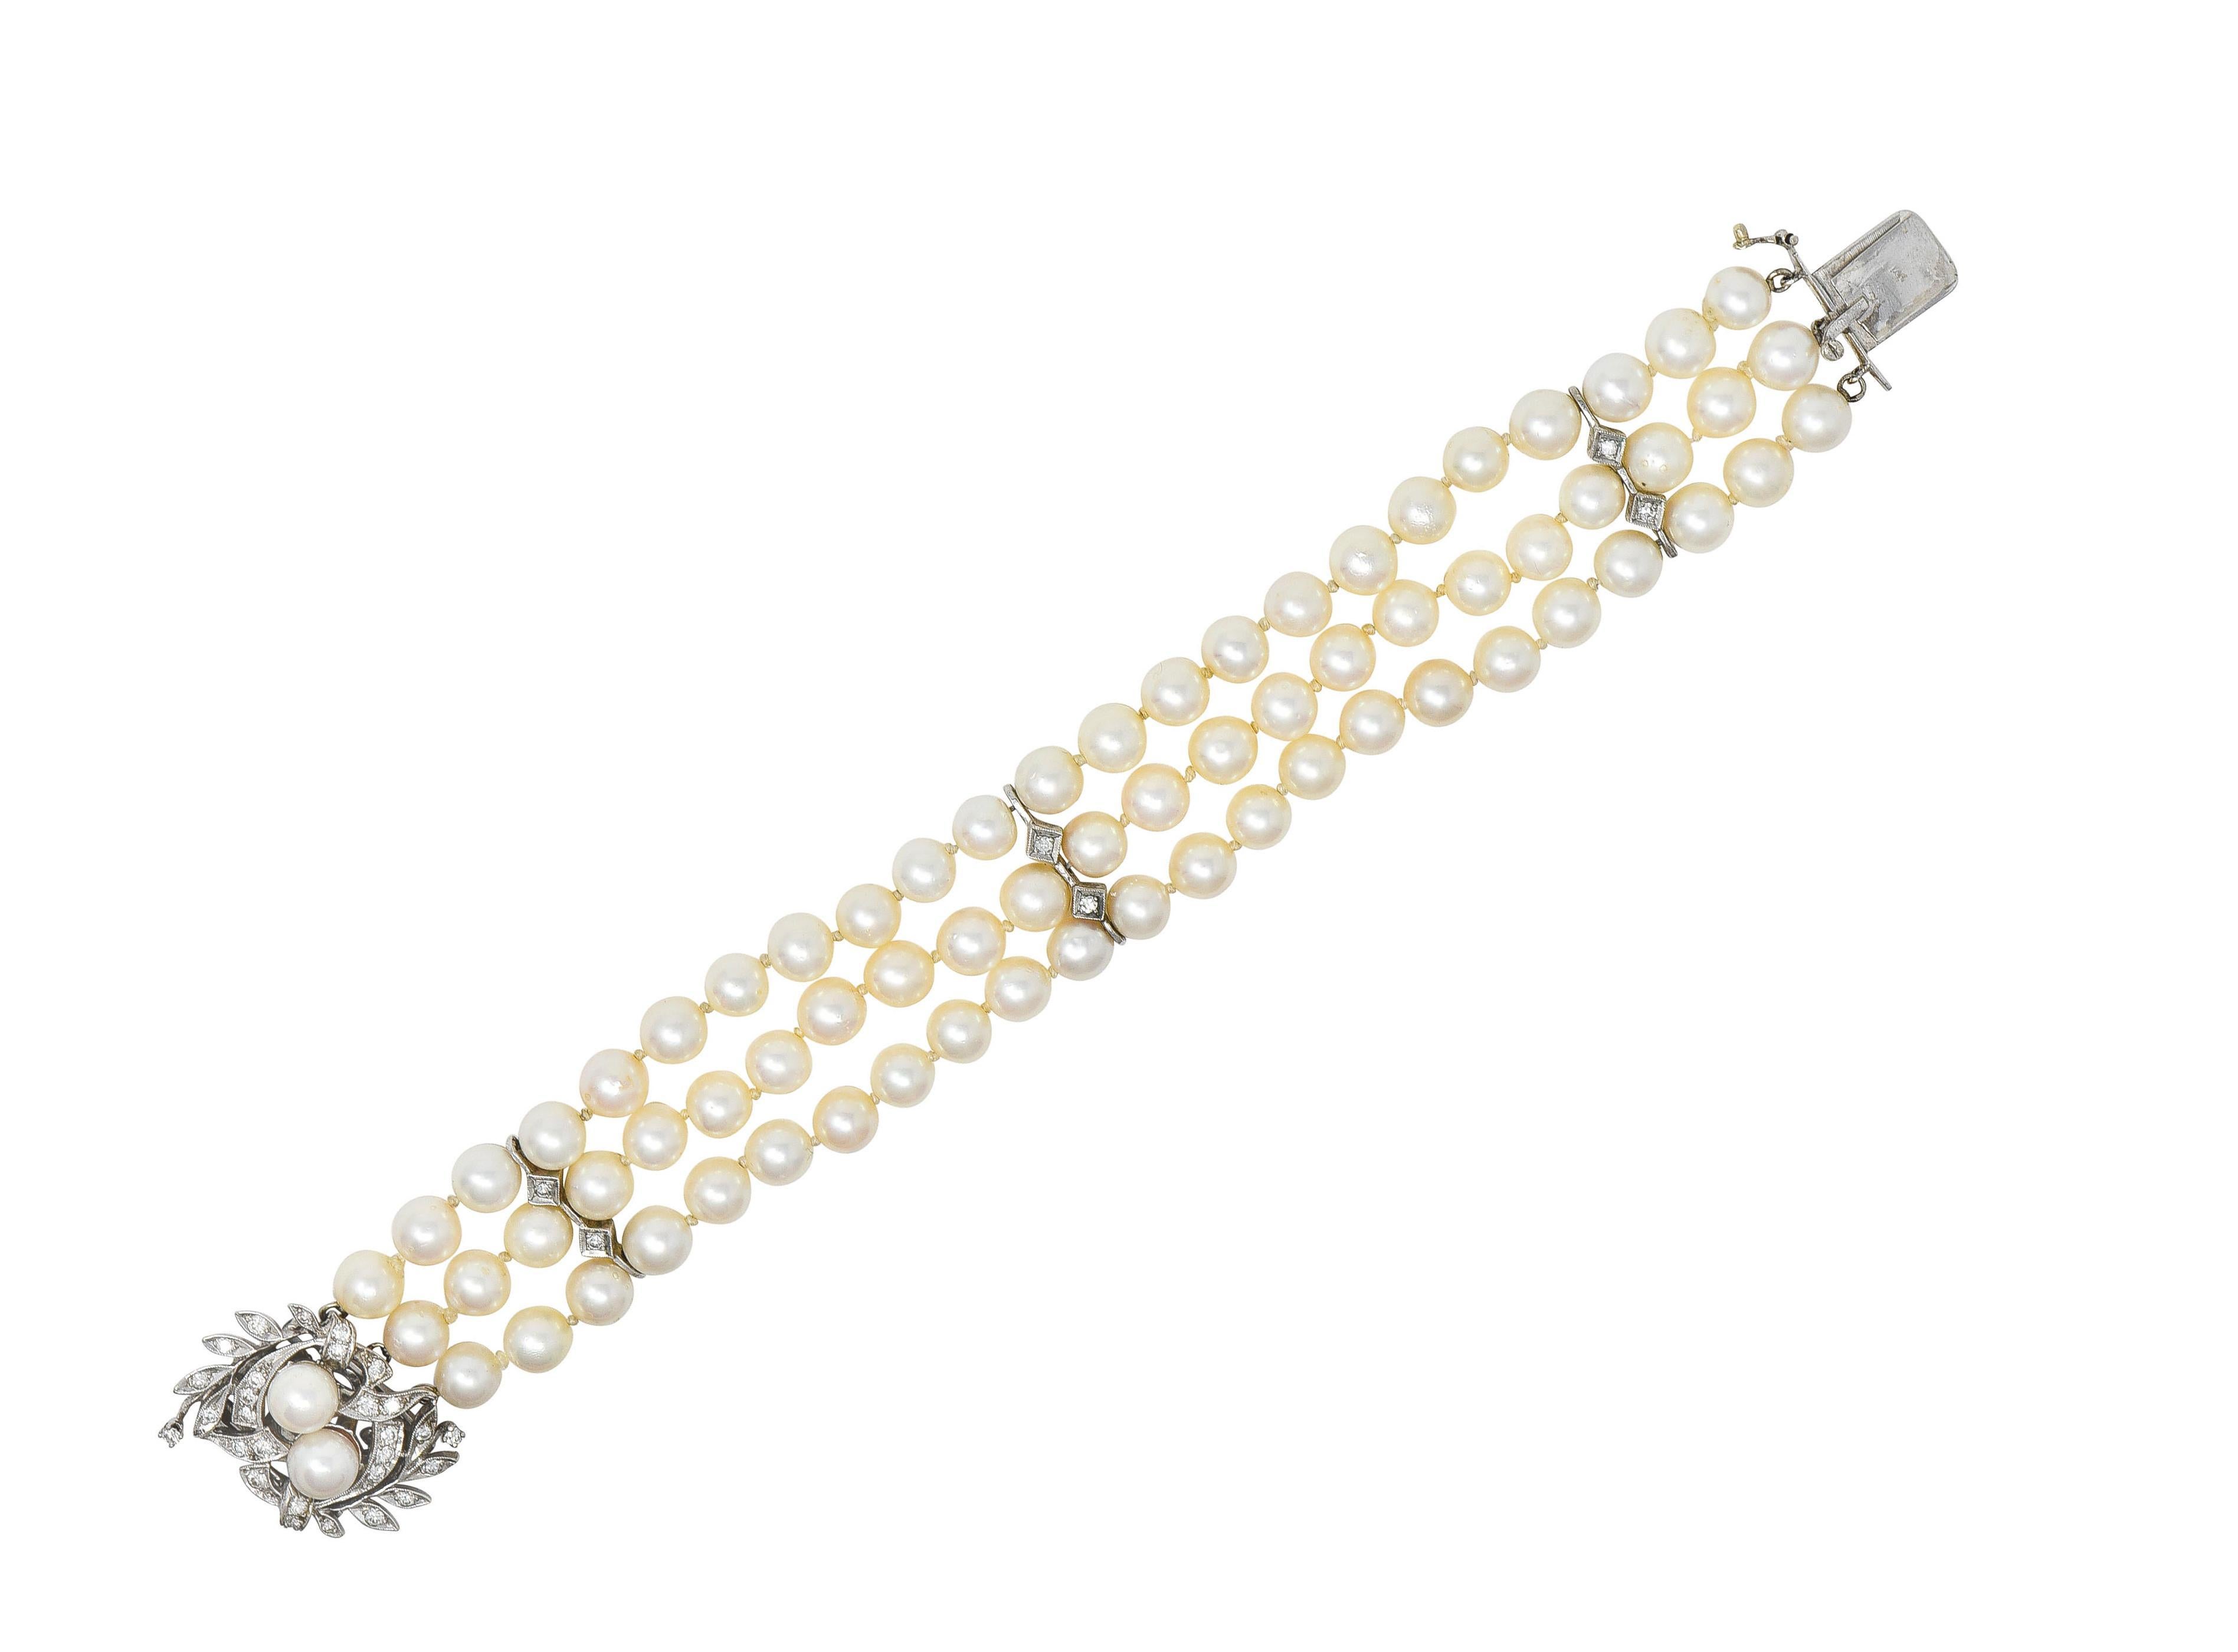 Composé de trois rangs de perles rondes avec des stations de motifs de feuillages et de diamants en or blanc. 
La taille des perles varie de 6,0 à 7,0 mm. Elles sont de couleur crème à rose, fortement irisées et brillantes.
La station à motif de